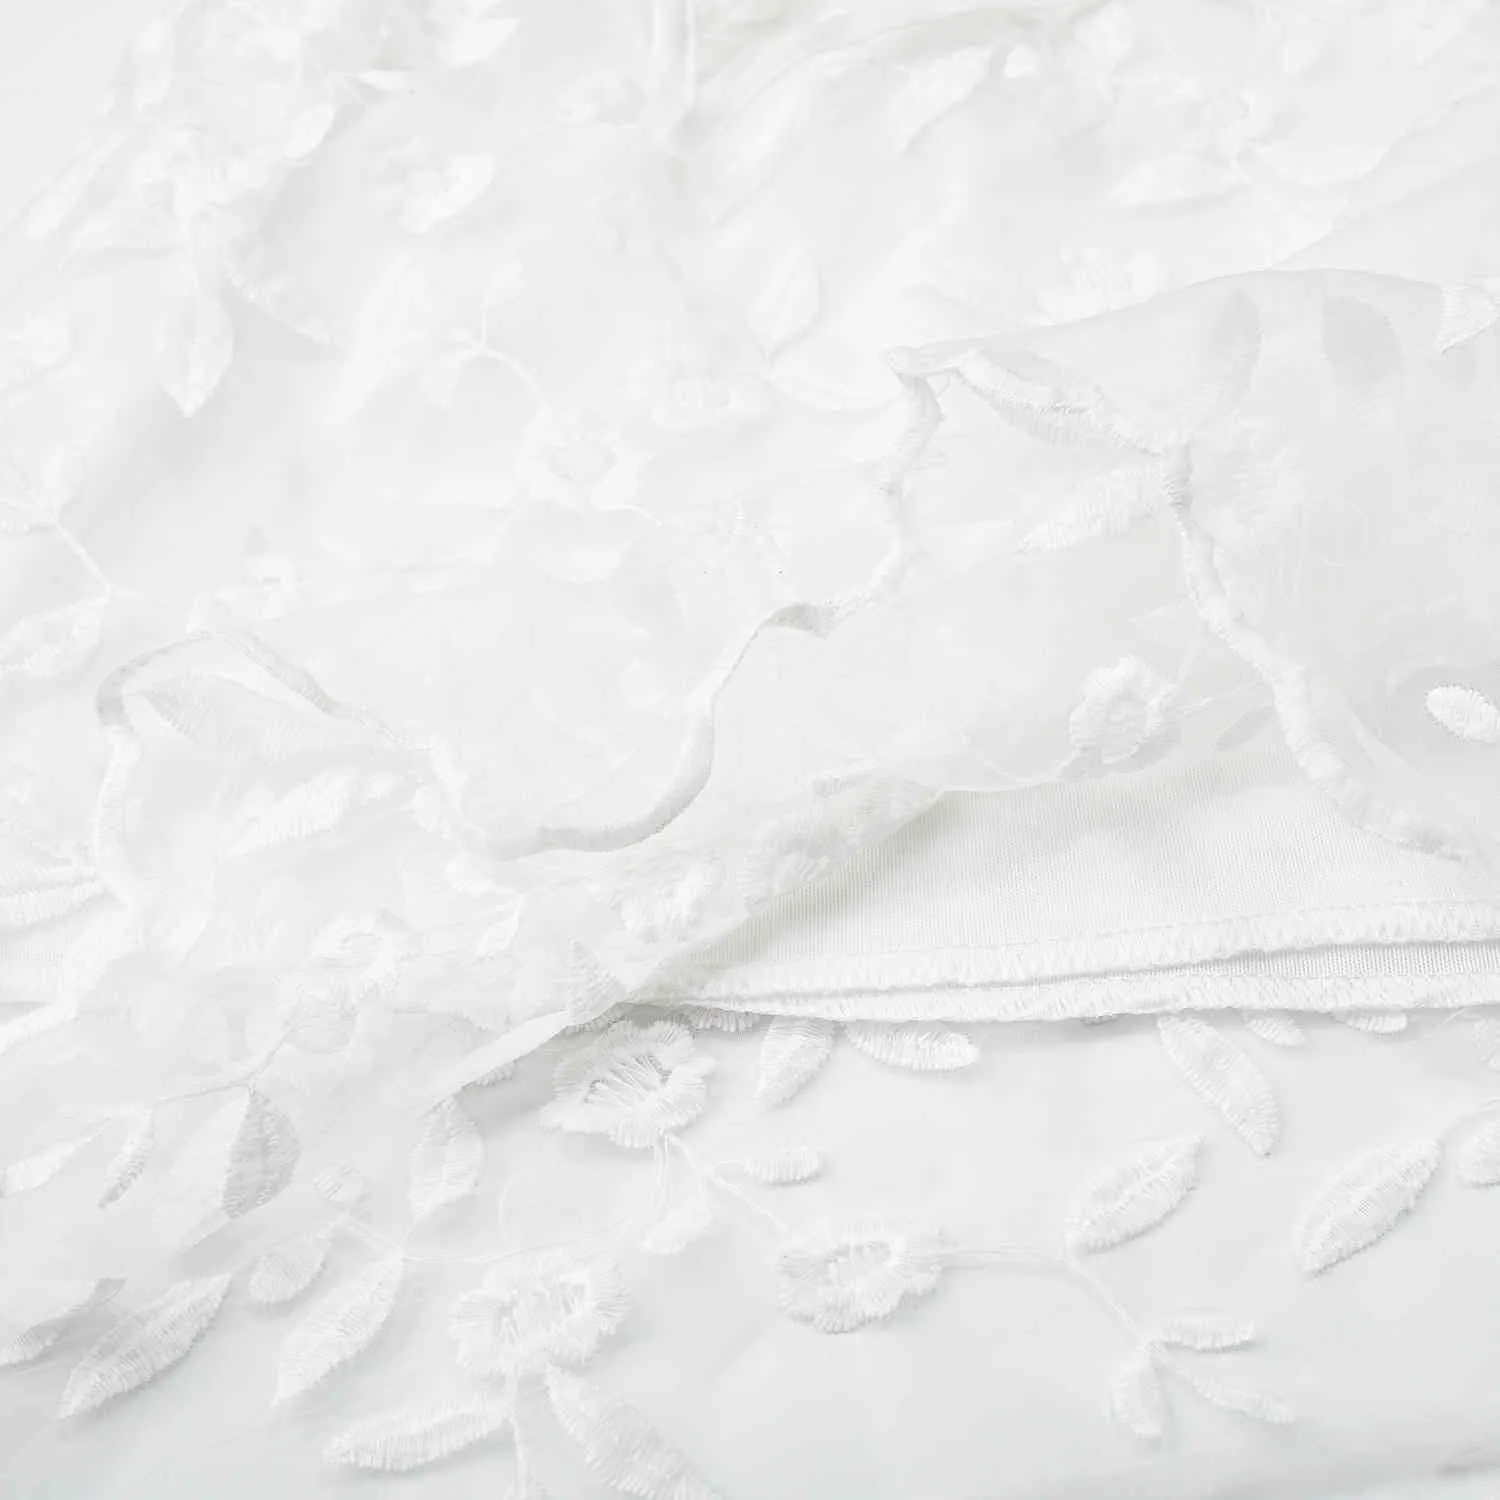 ファッションホワイト刺繍花ドレス女性の背中のチュールメッシュドレスショートシックなボホビーチスタイル夏のドレスミニVestido 210415